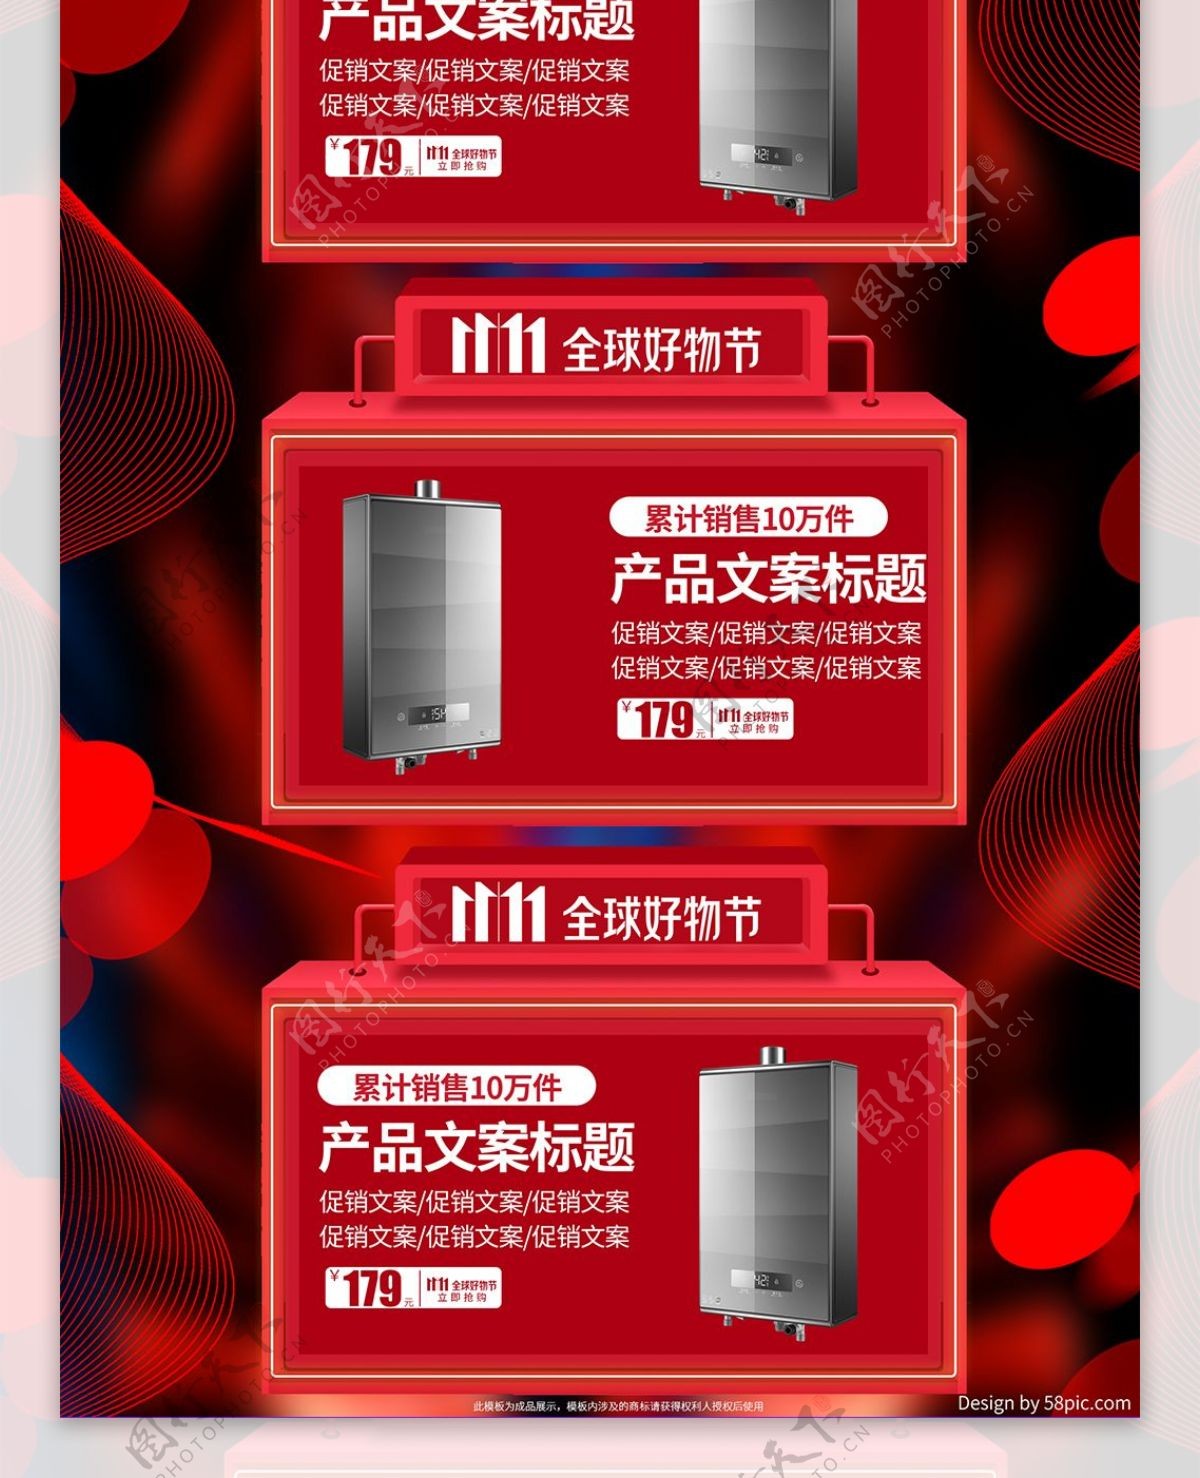 红色炫酷光线京东双十一促销好物节电商首页